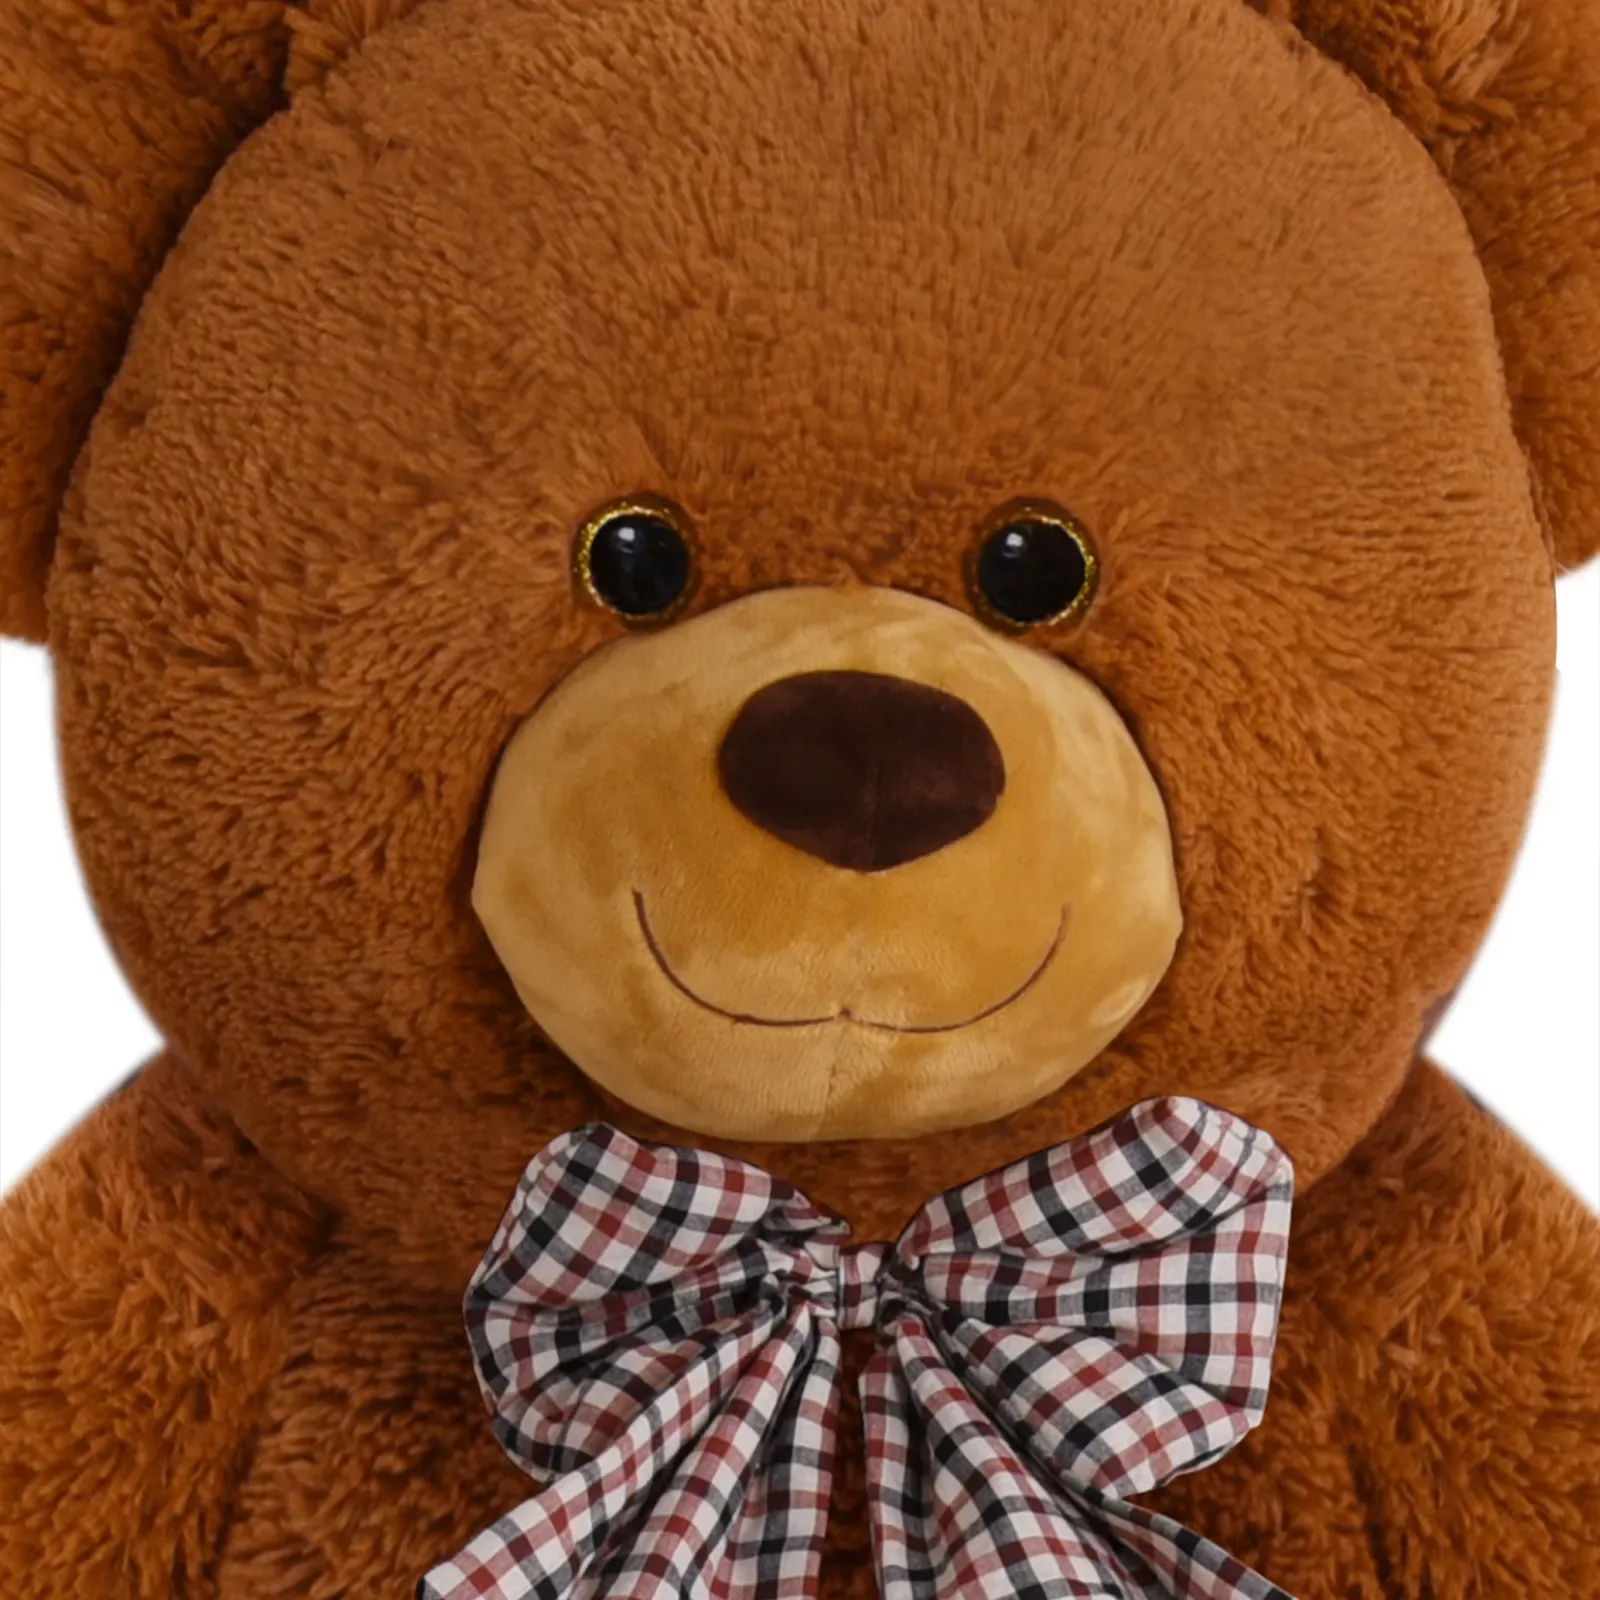 Plüschtier Teddybär XXXL Braun 175cm günstig online kaufen